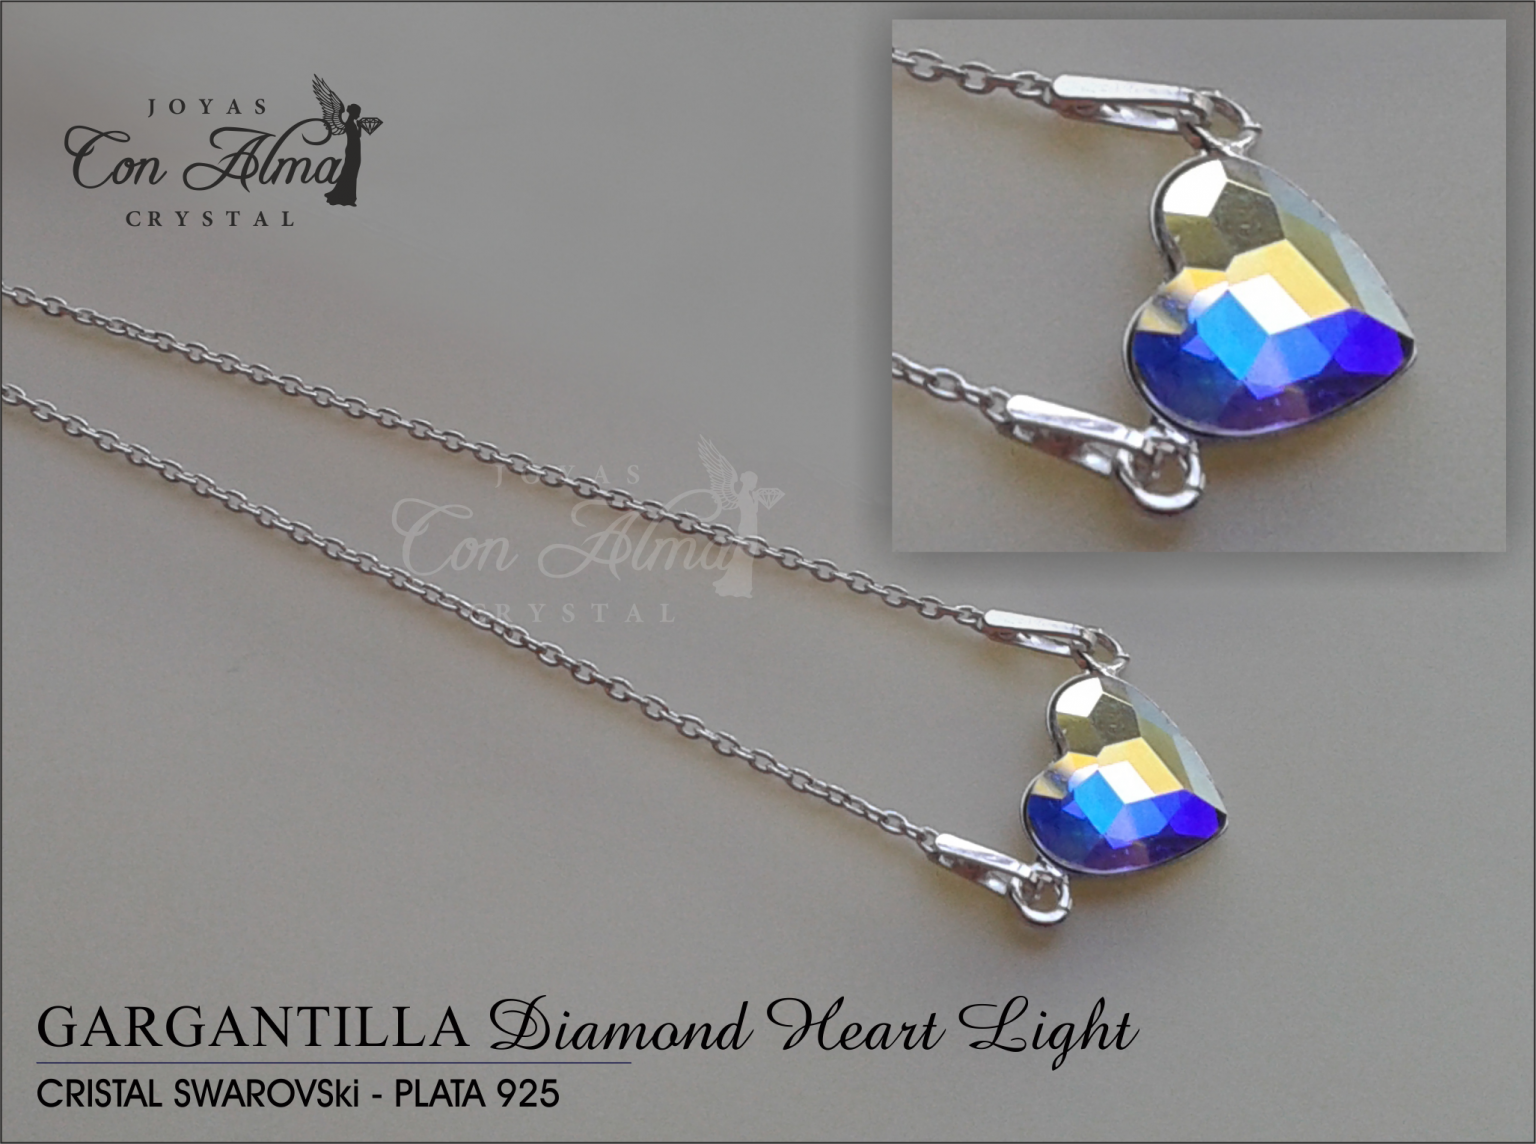 Gargantilla Diamond light 34,99 €